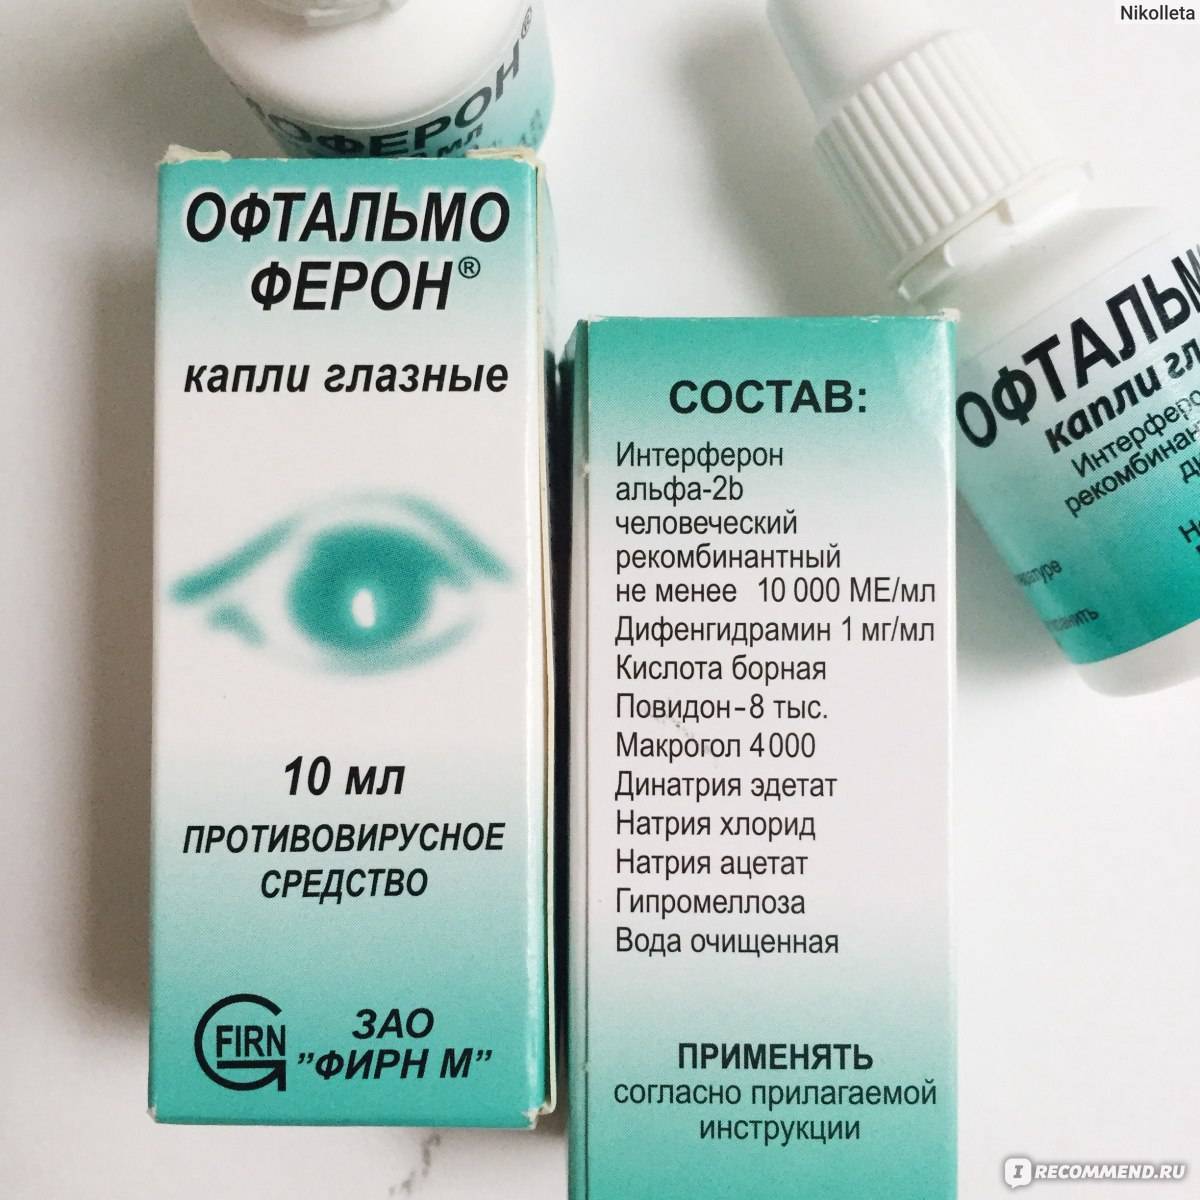 Офтальмоферон® (oftalmoferon®)